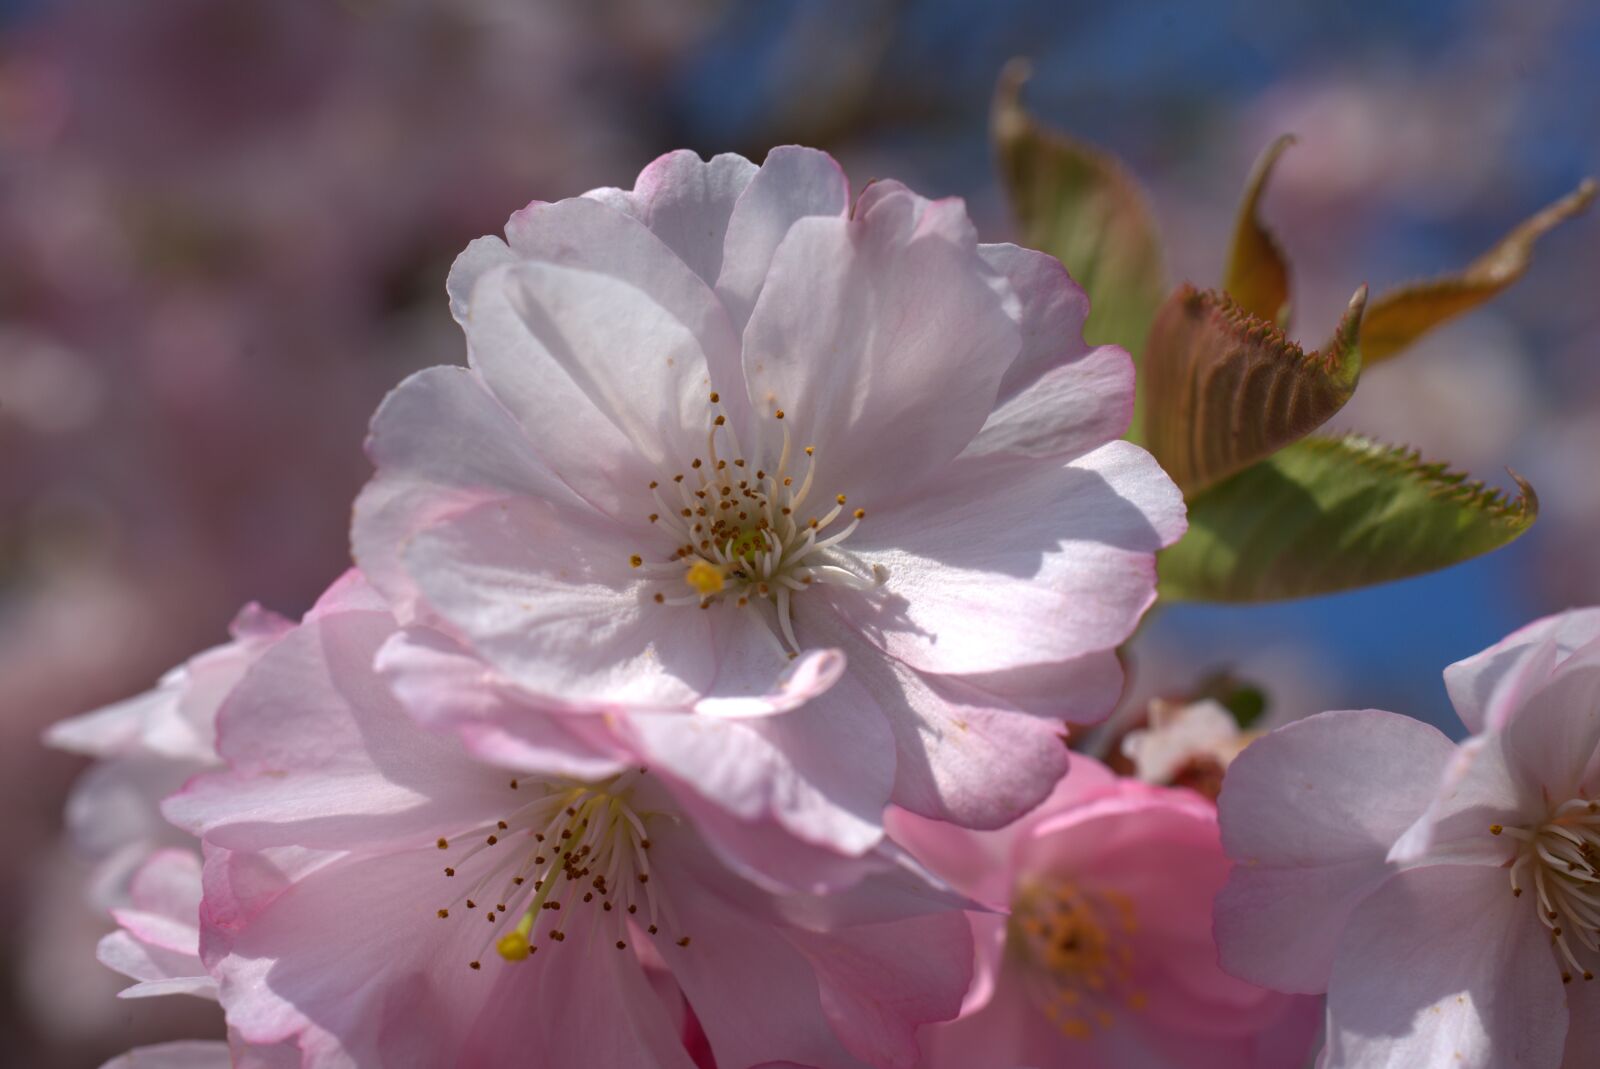 Sony FE 50mm F2.8 Macro sample photo. Cherry blossom, cherry, blossom photography